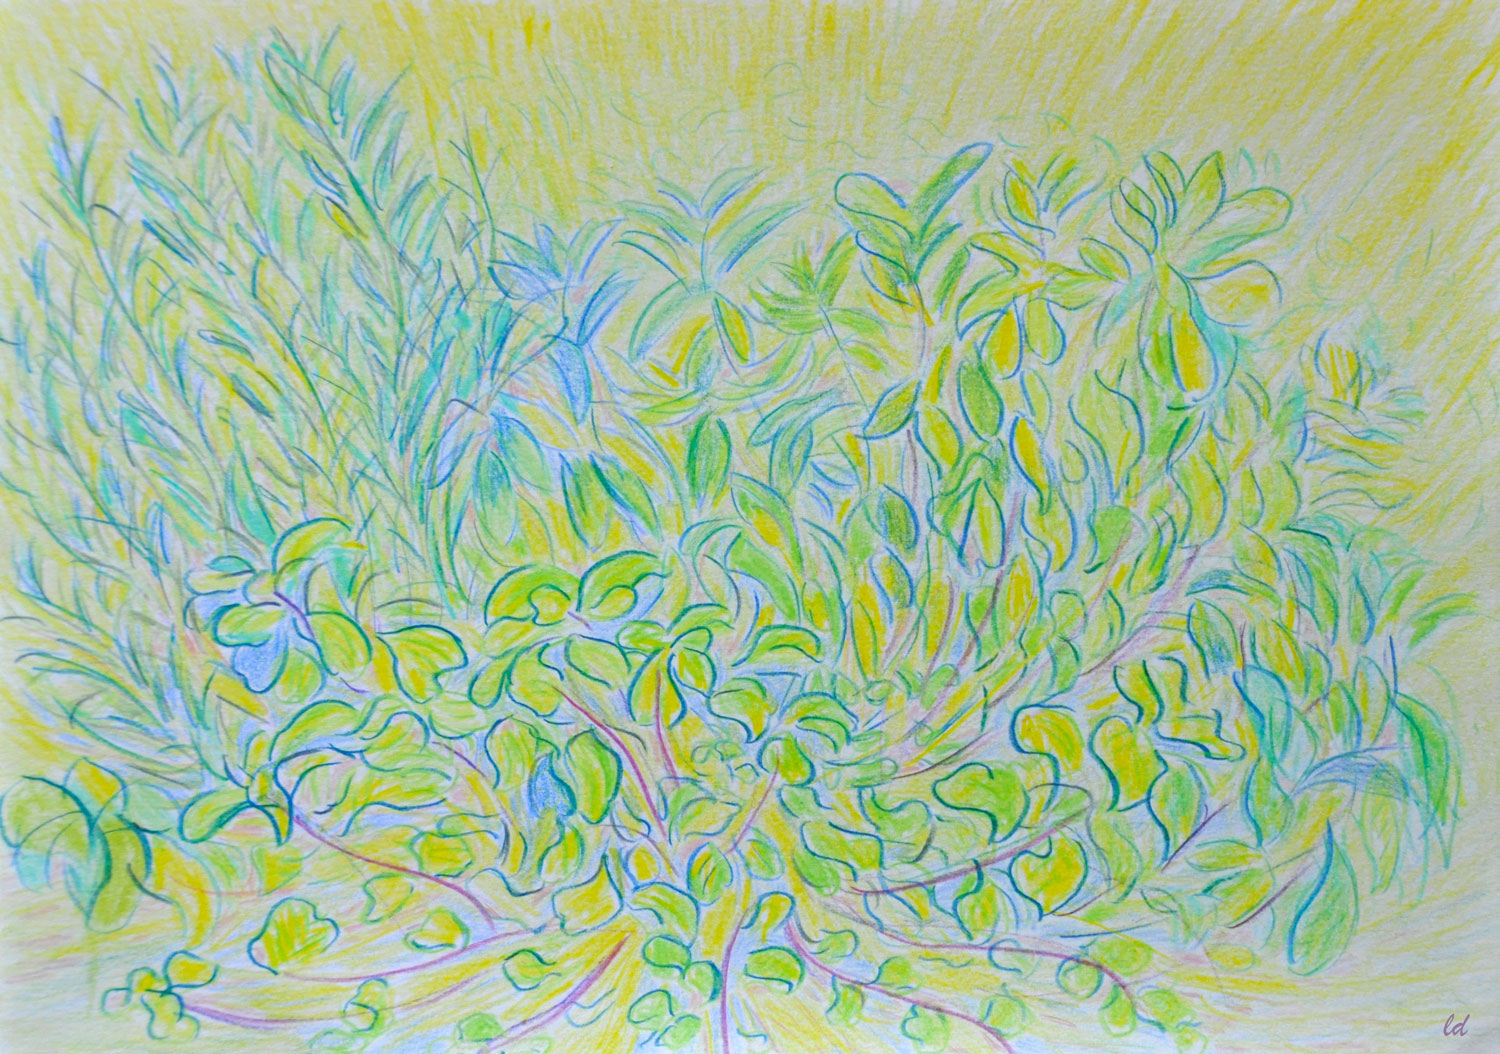 La jardinière. Crayon de couleur sur papier, 21x29, 2021